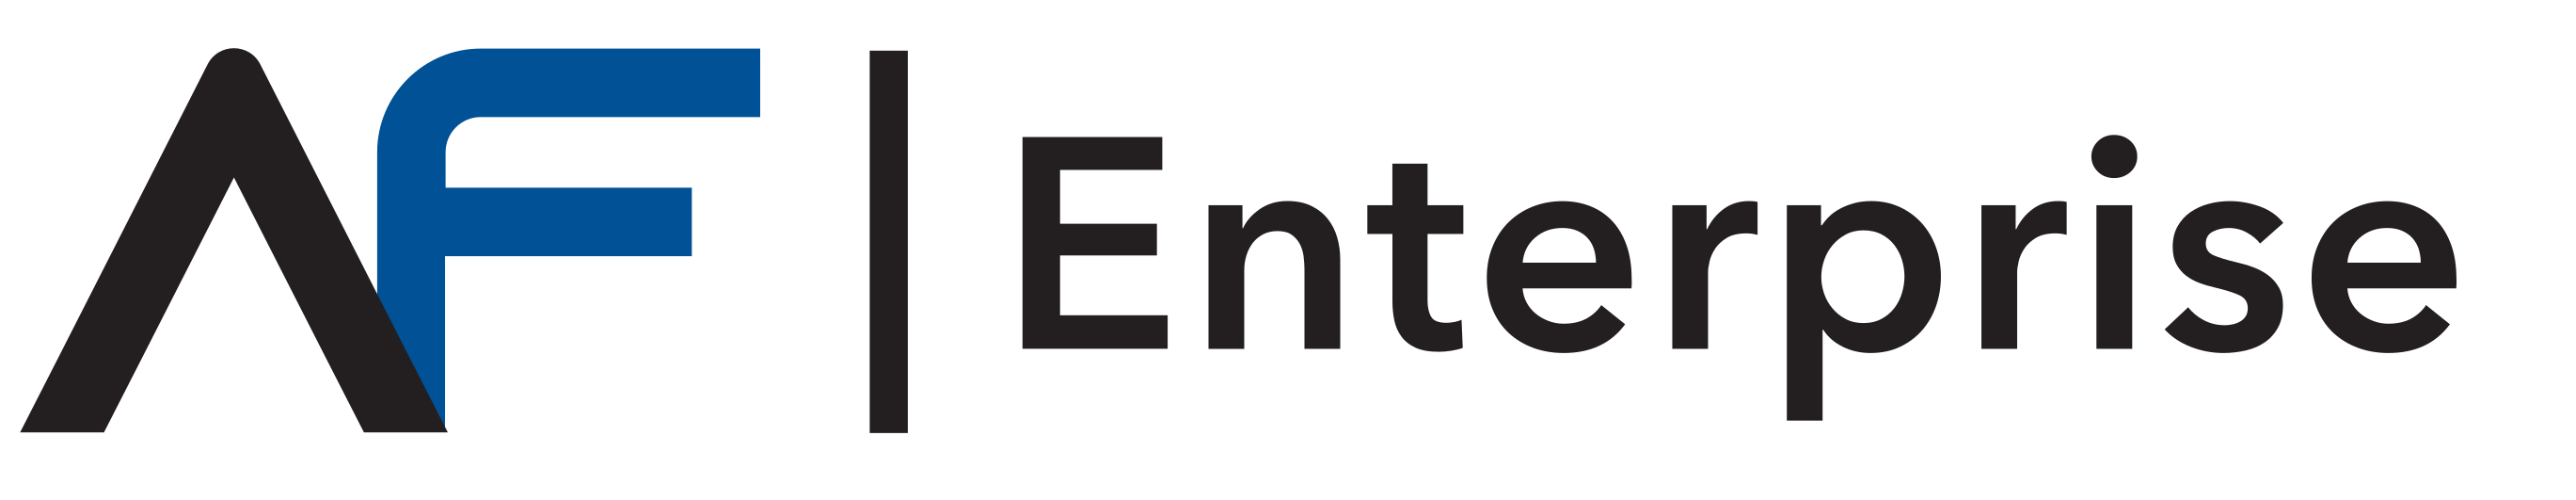 Enterprise_1